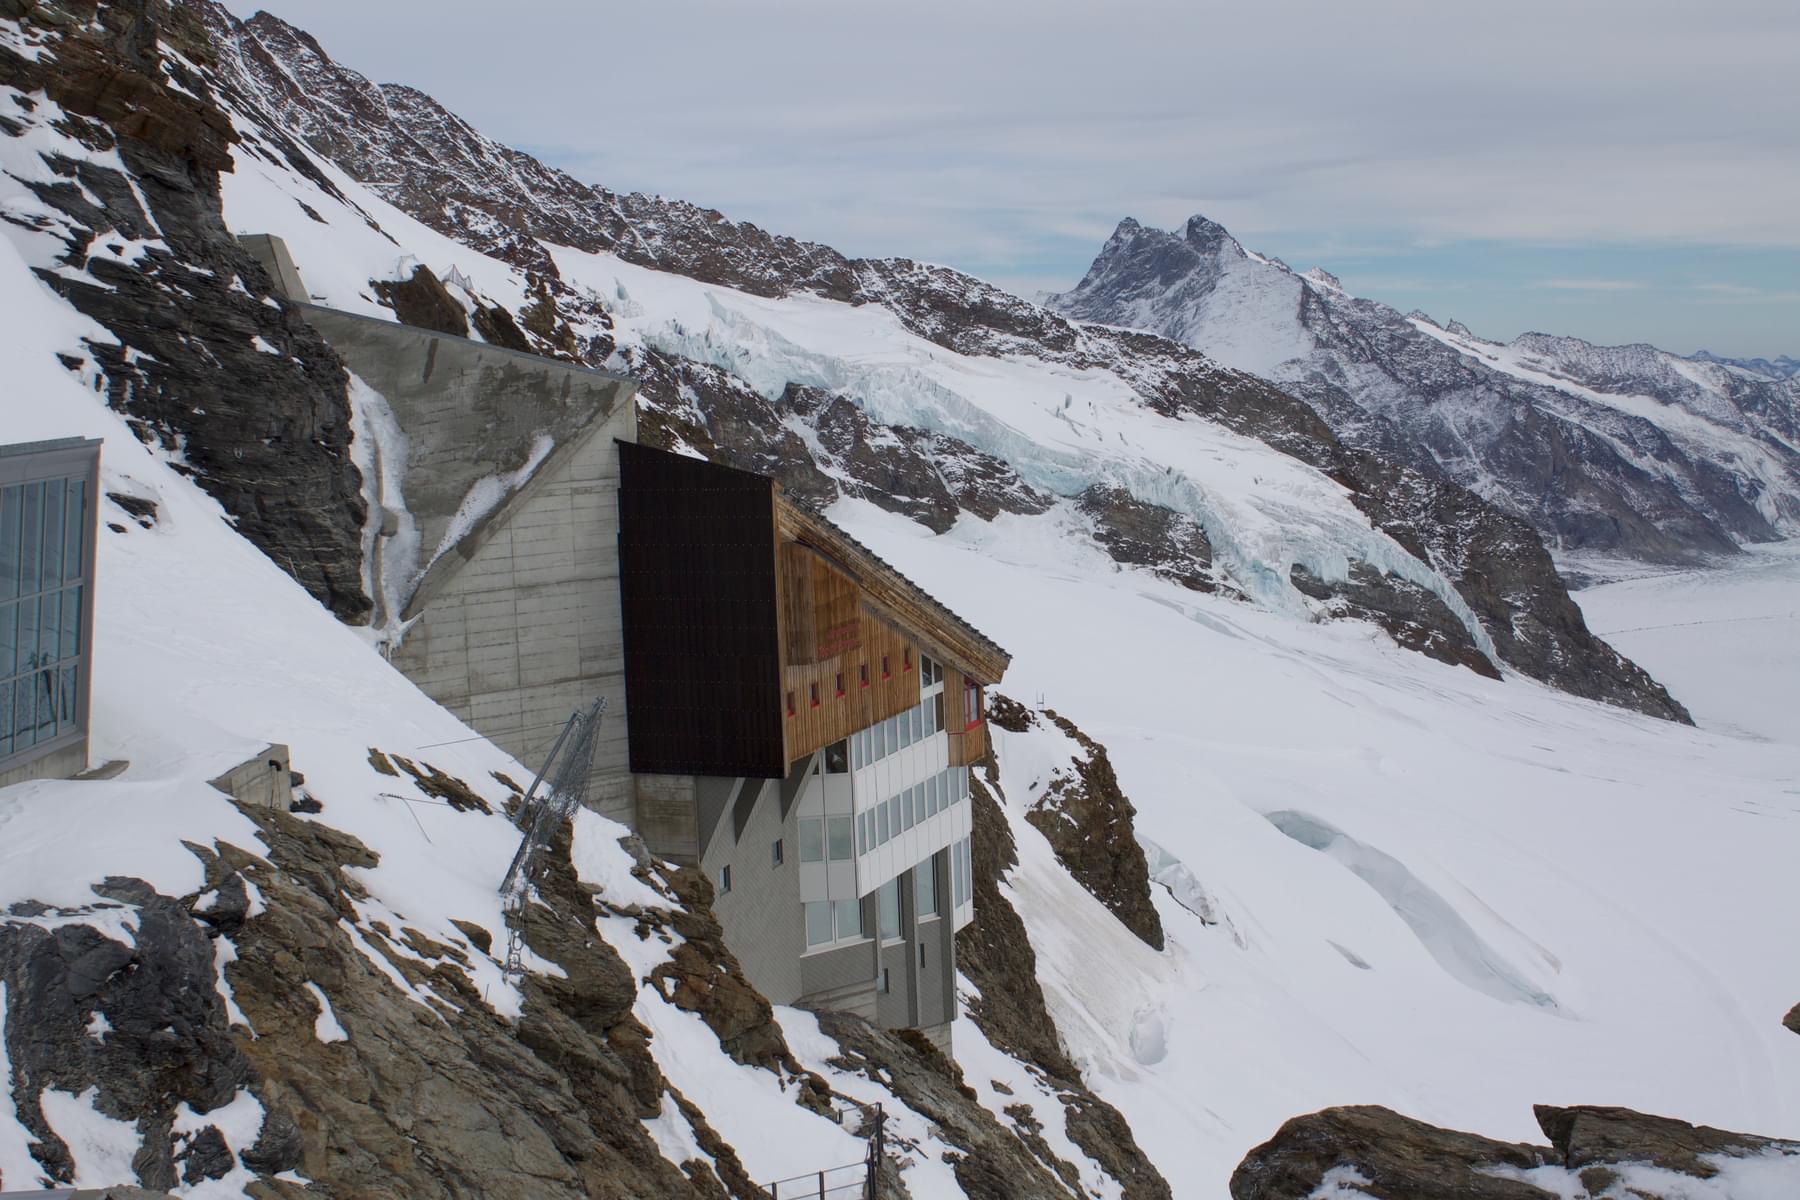 Visit the Jungfraujoch